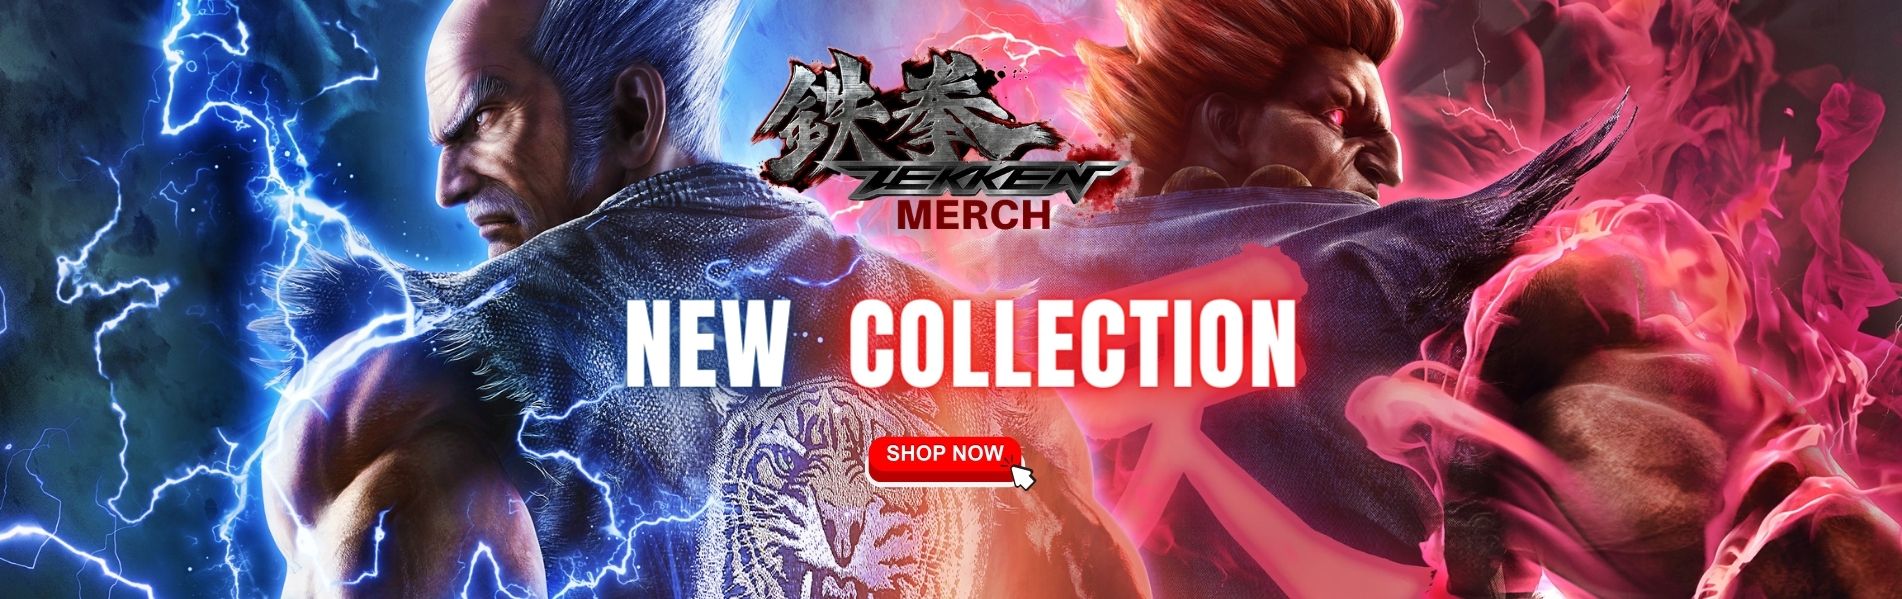 Tekken Merch Banner - Tekken Merch